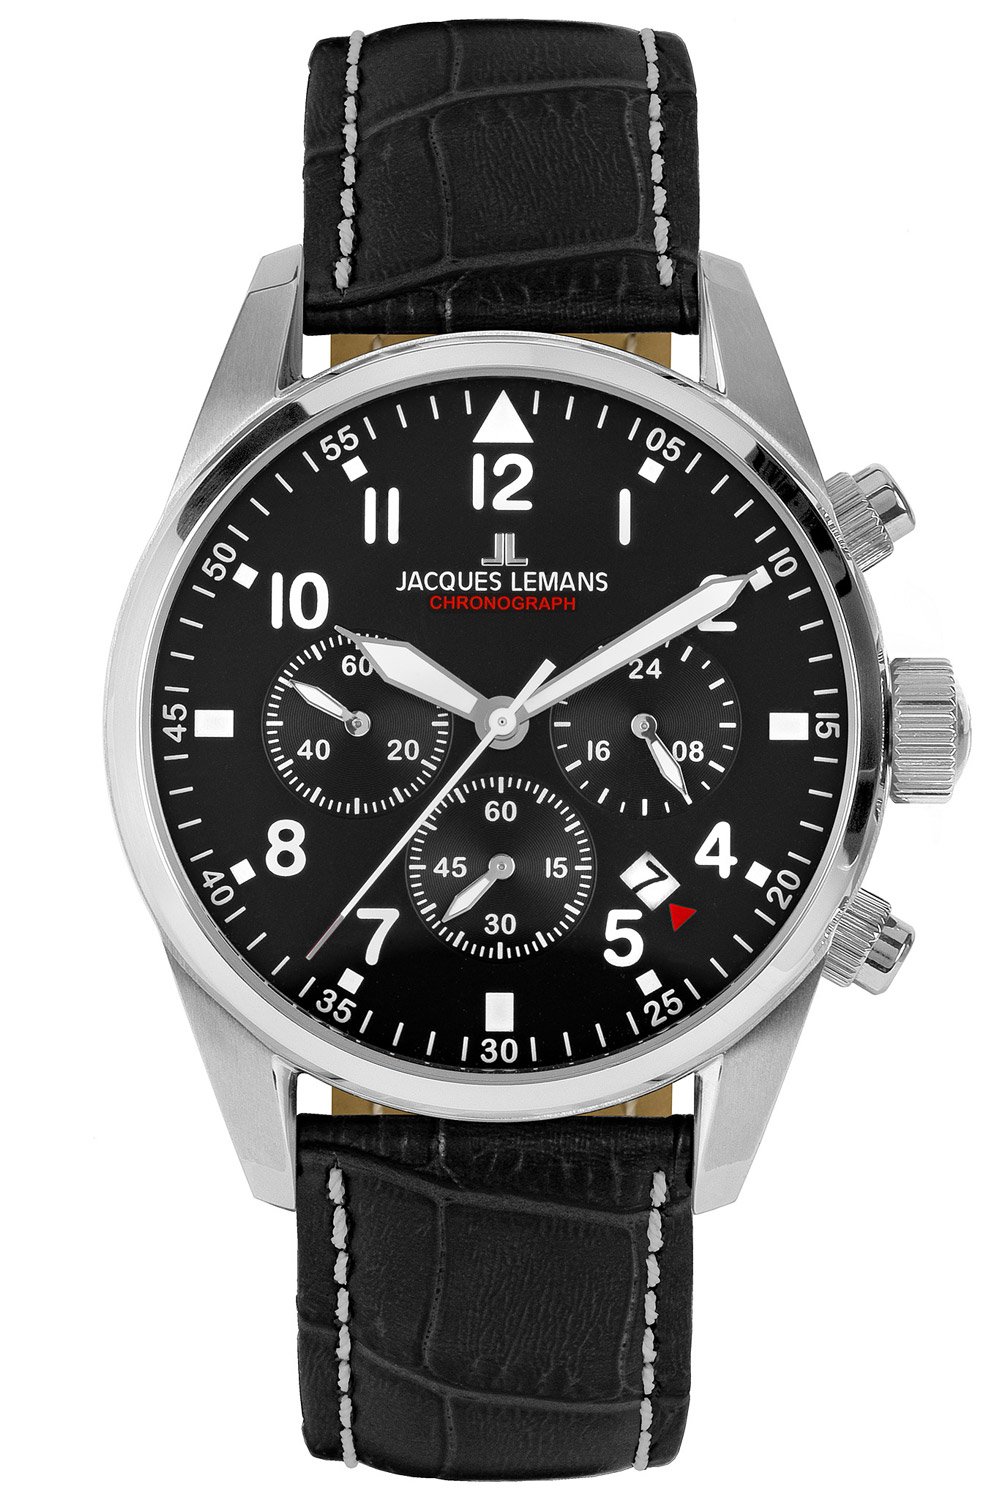 Jacques Lemans Men's Watch Chronograph Barcelona Black 42-2A • uhrcenter